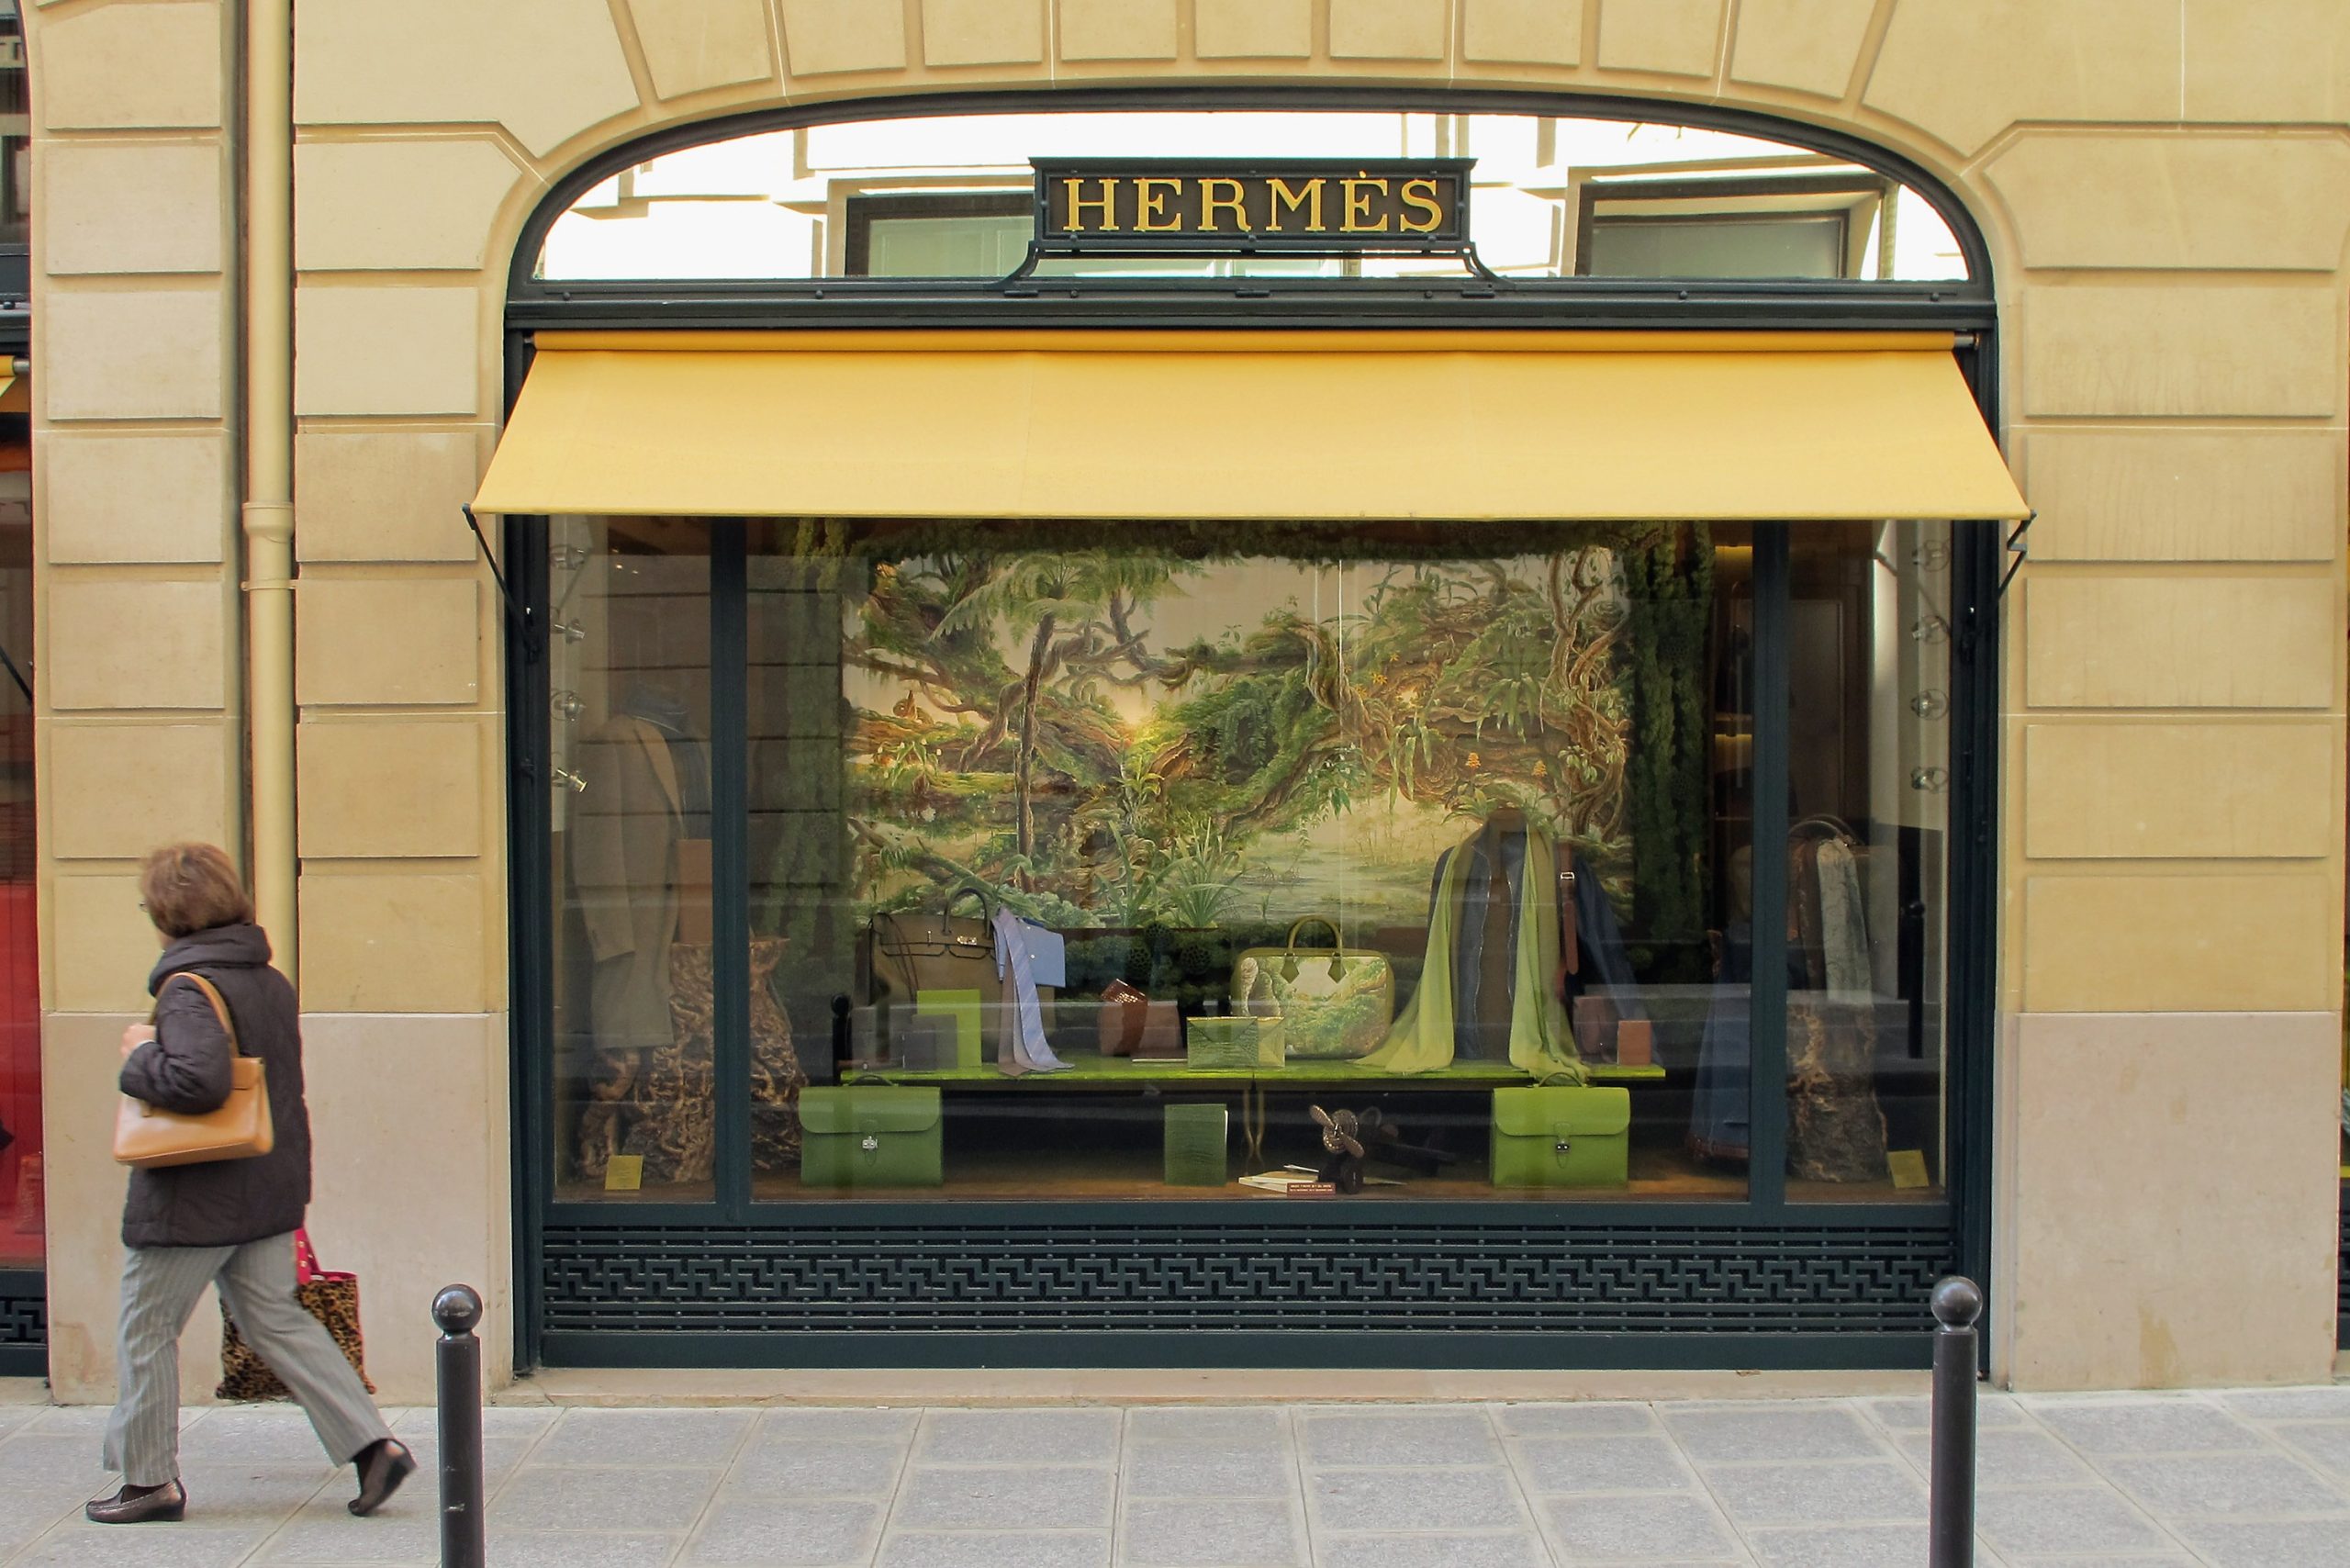 Eingang zu einer Hermès Filiale